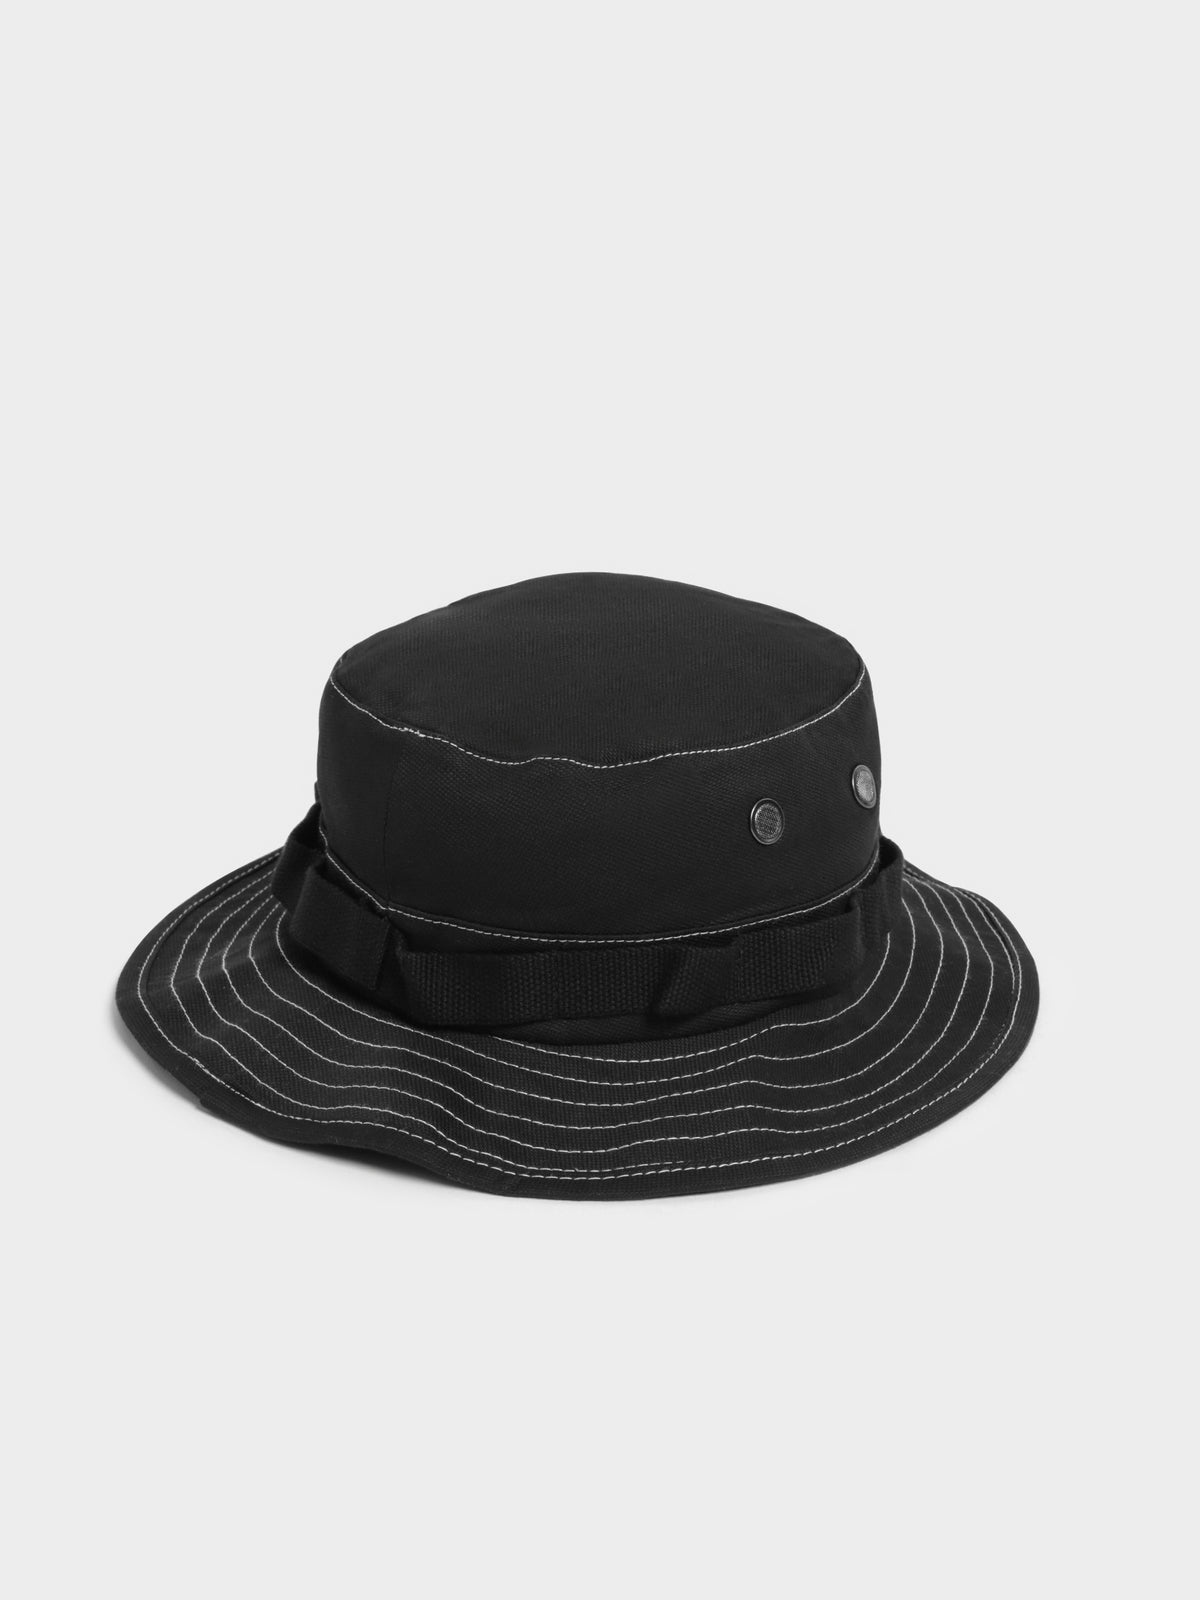 Contrast Stitch Boonie Hat in Black &amp; White